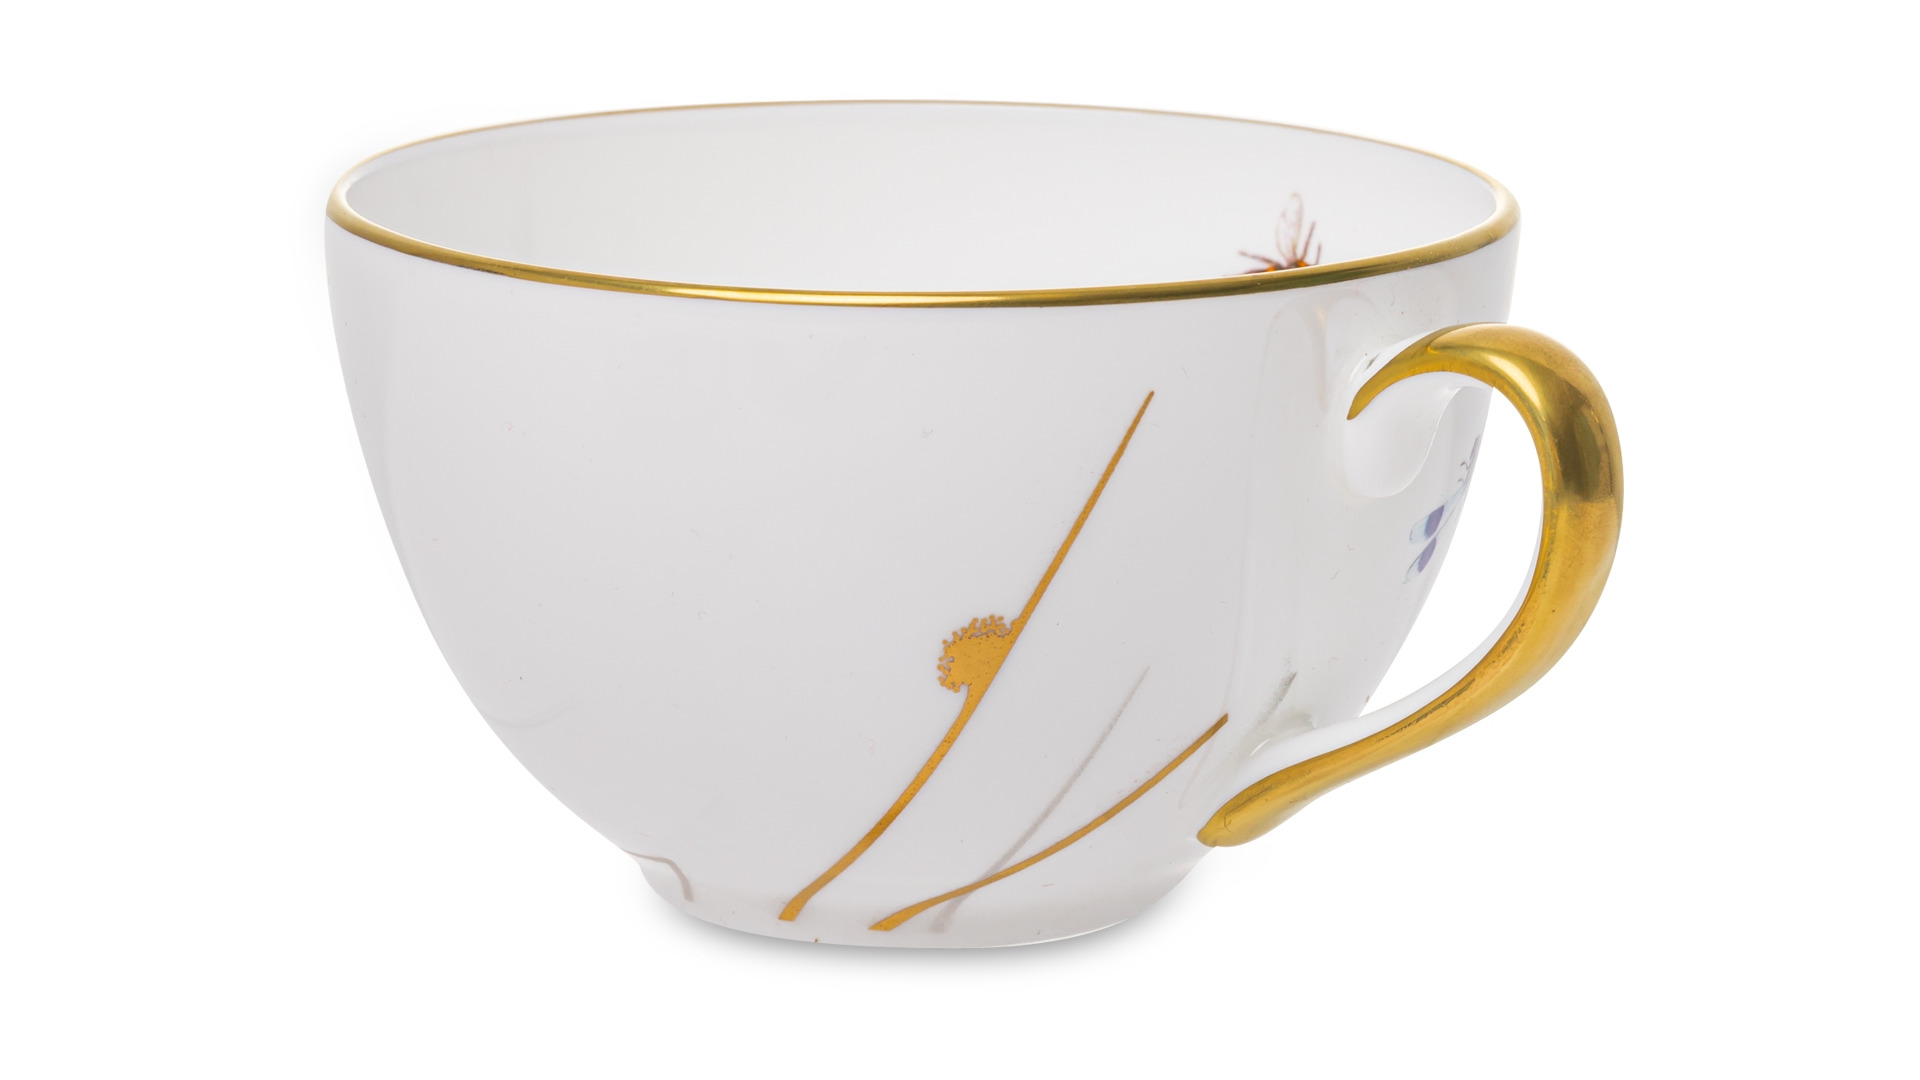 Чашка чайная с блюдцем William Edwards Рид 260 мл, фарфор костяной